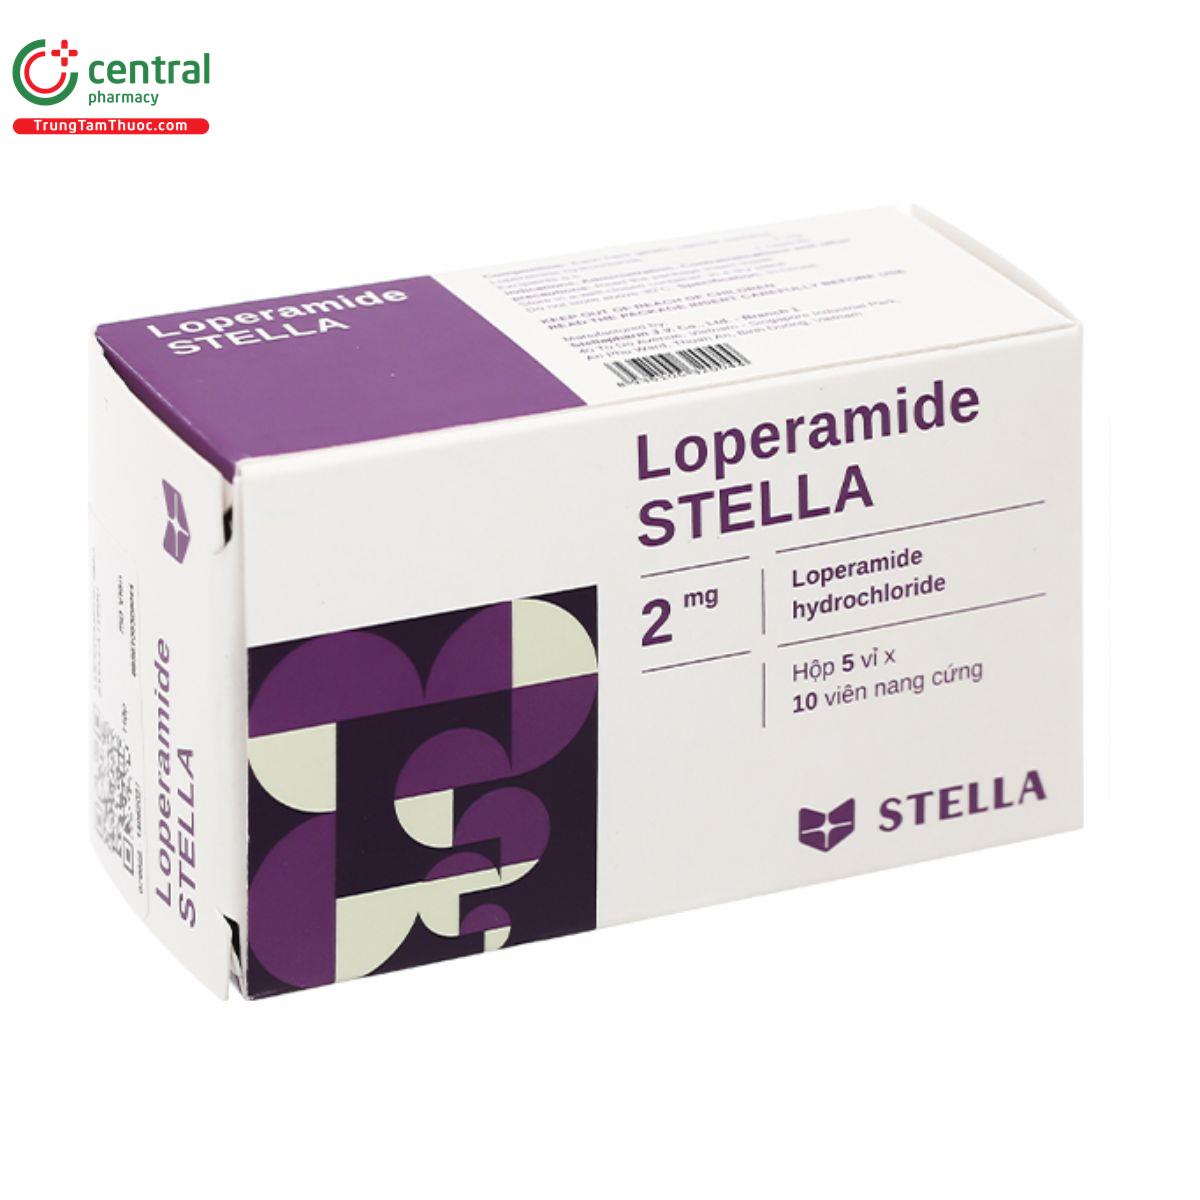 thuoc loperamide stella 2 F2733